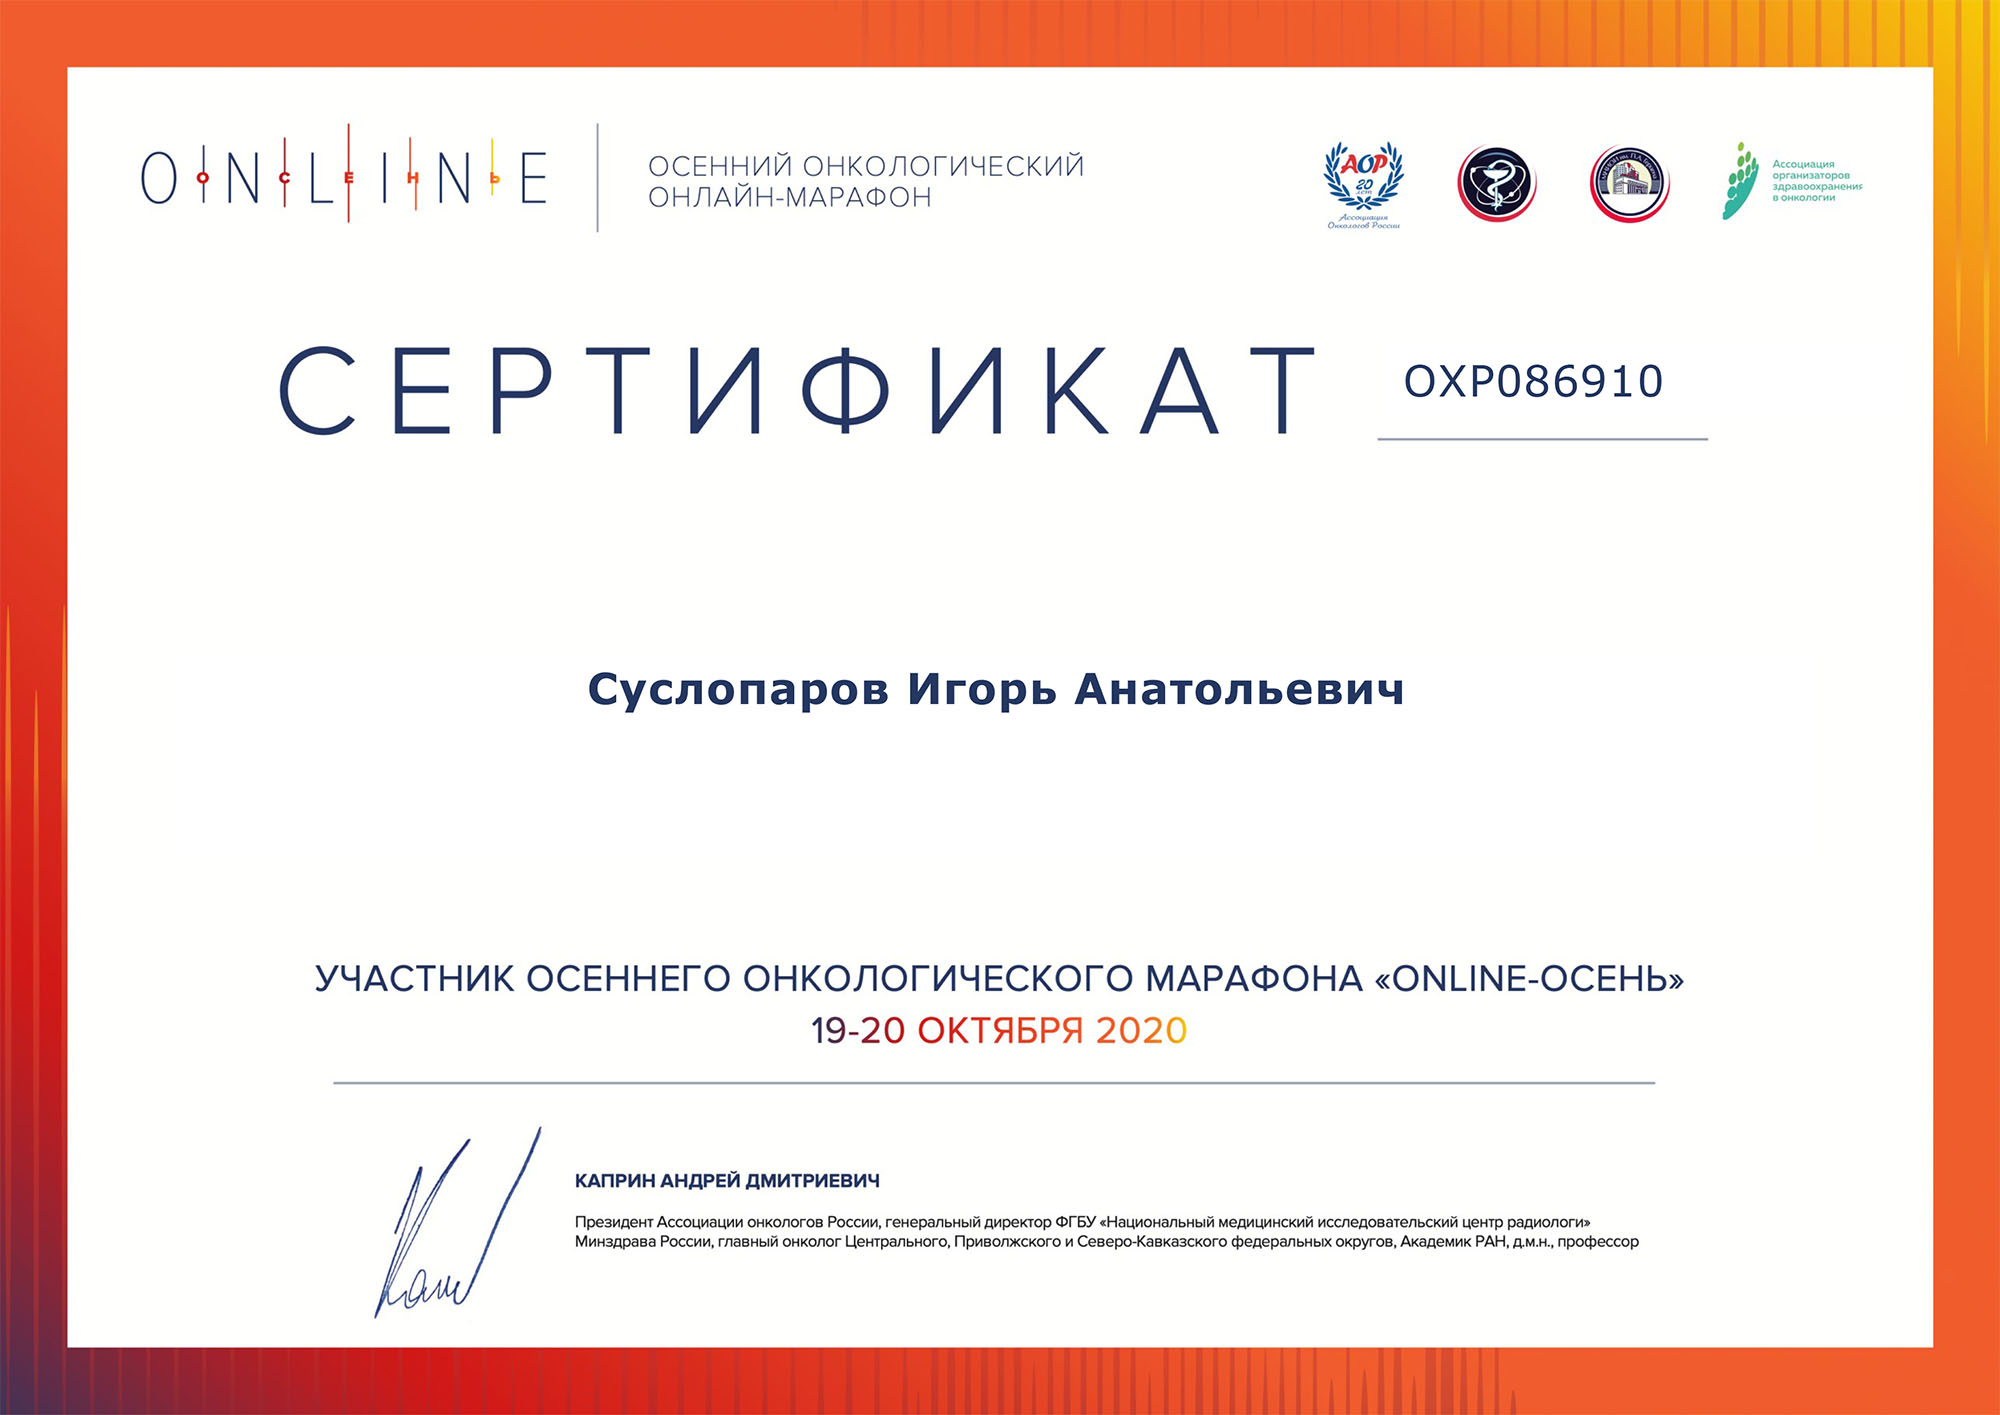 Участник осеннего онкологического марафона Online-осень. Сертификат Суслопарова И.А.